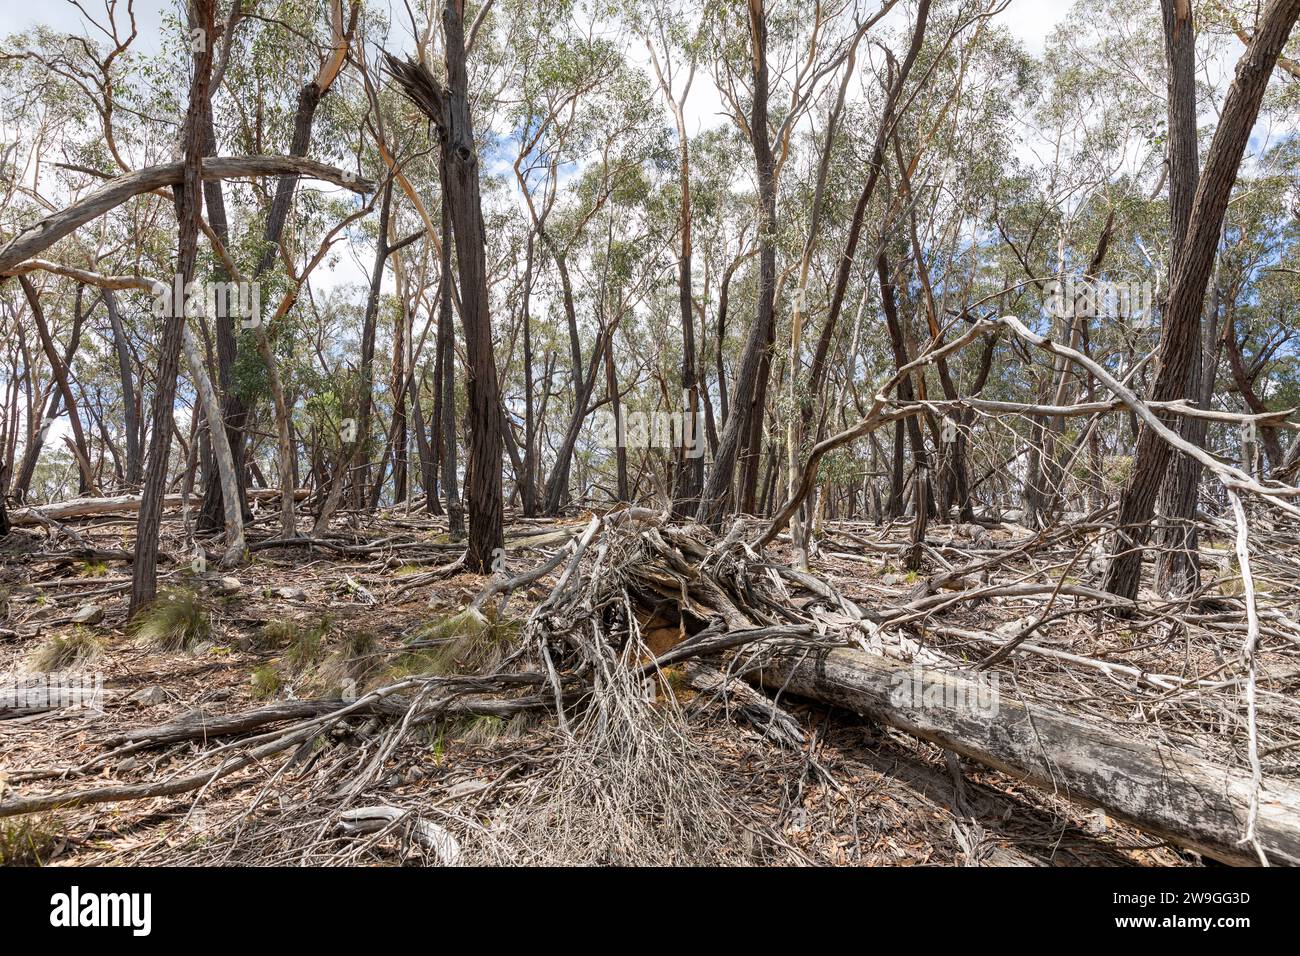 Bush australien dans le centre ouest de la Nouvelle-Galles du Sud, arbres tombés dans le paysage, nature, Nouvelle-Galles du Sud, Australie Banque D'Images